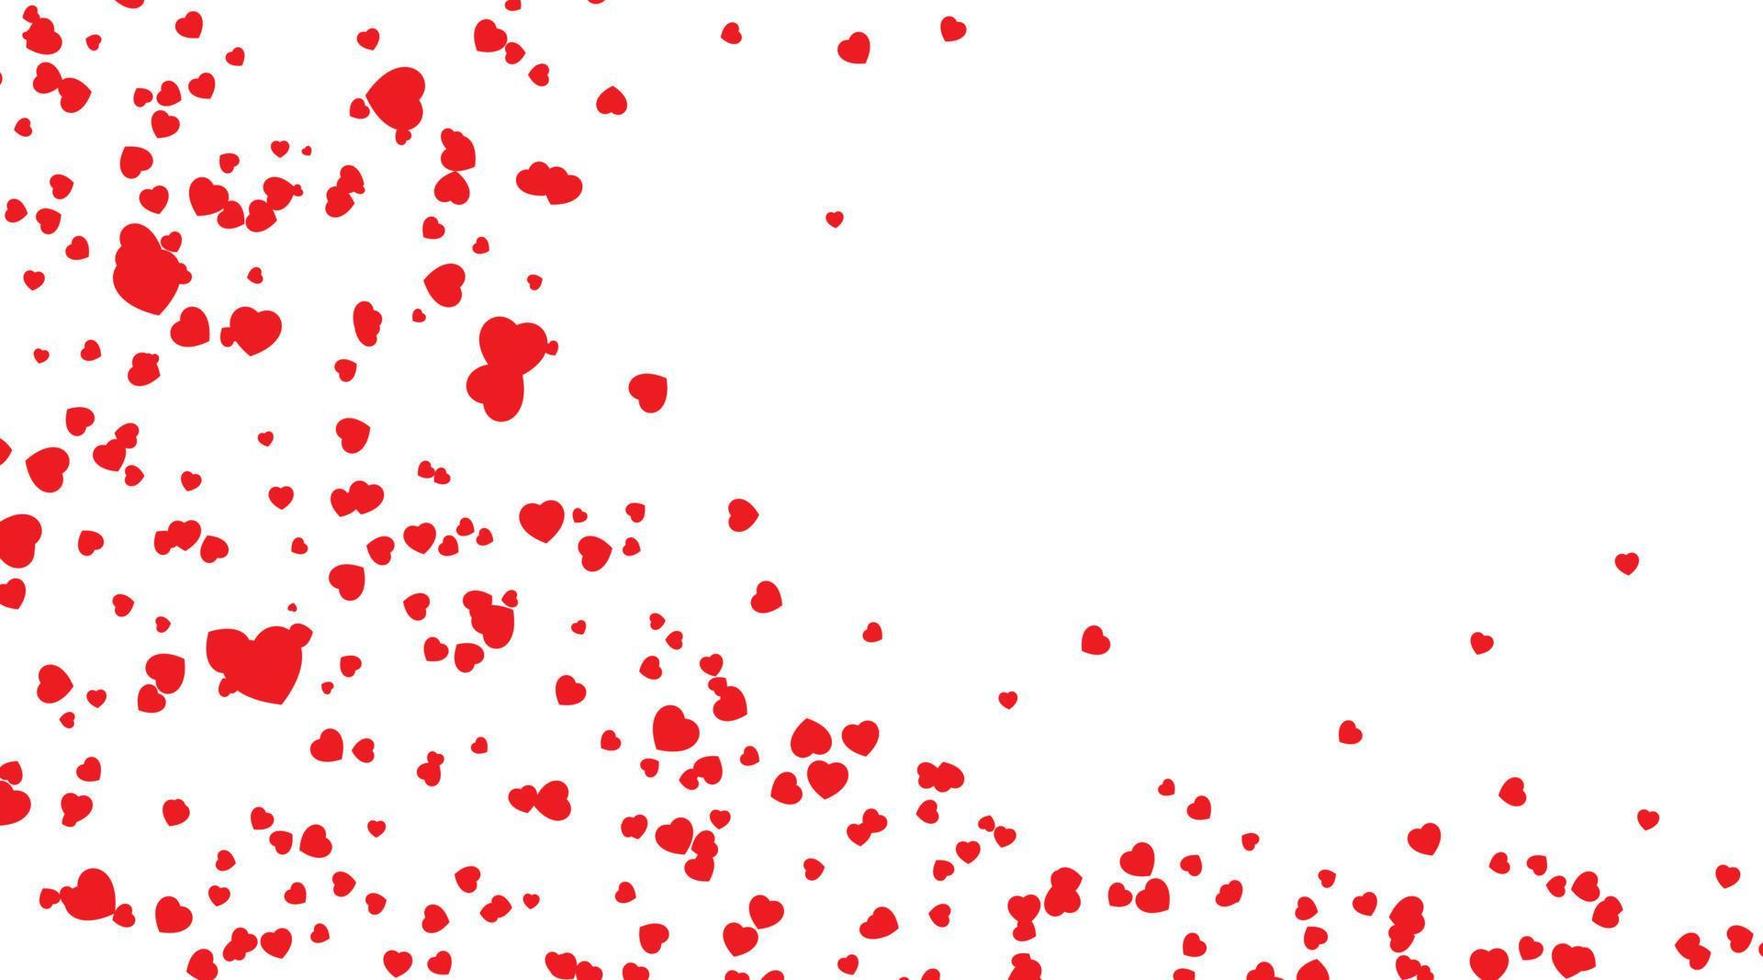 pétalos de corazones rojos cayendo sobre fondo blanco para el día de san valentín, forma de fondo de confeti de corazón. día de san valentín, forma de fondo de confeti de corazón vector